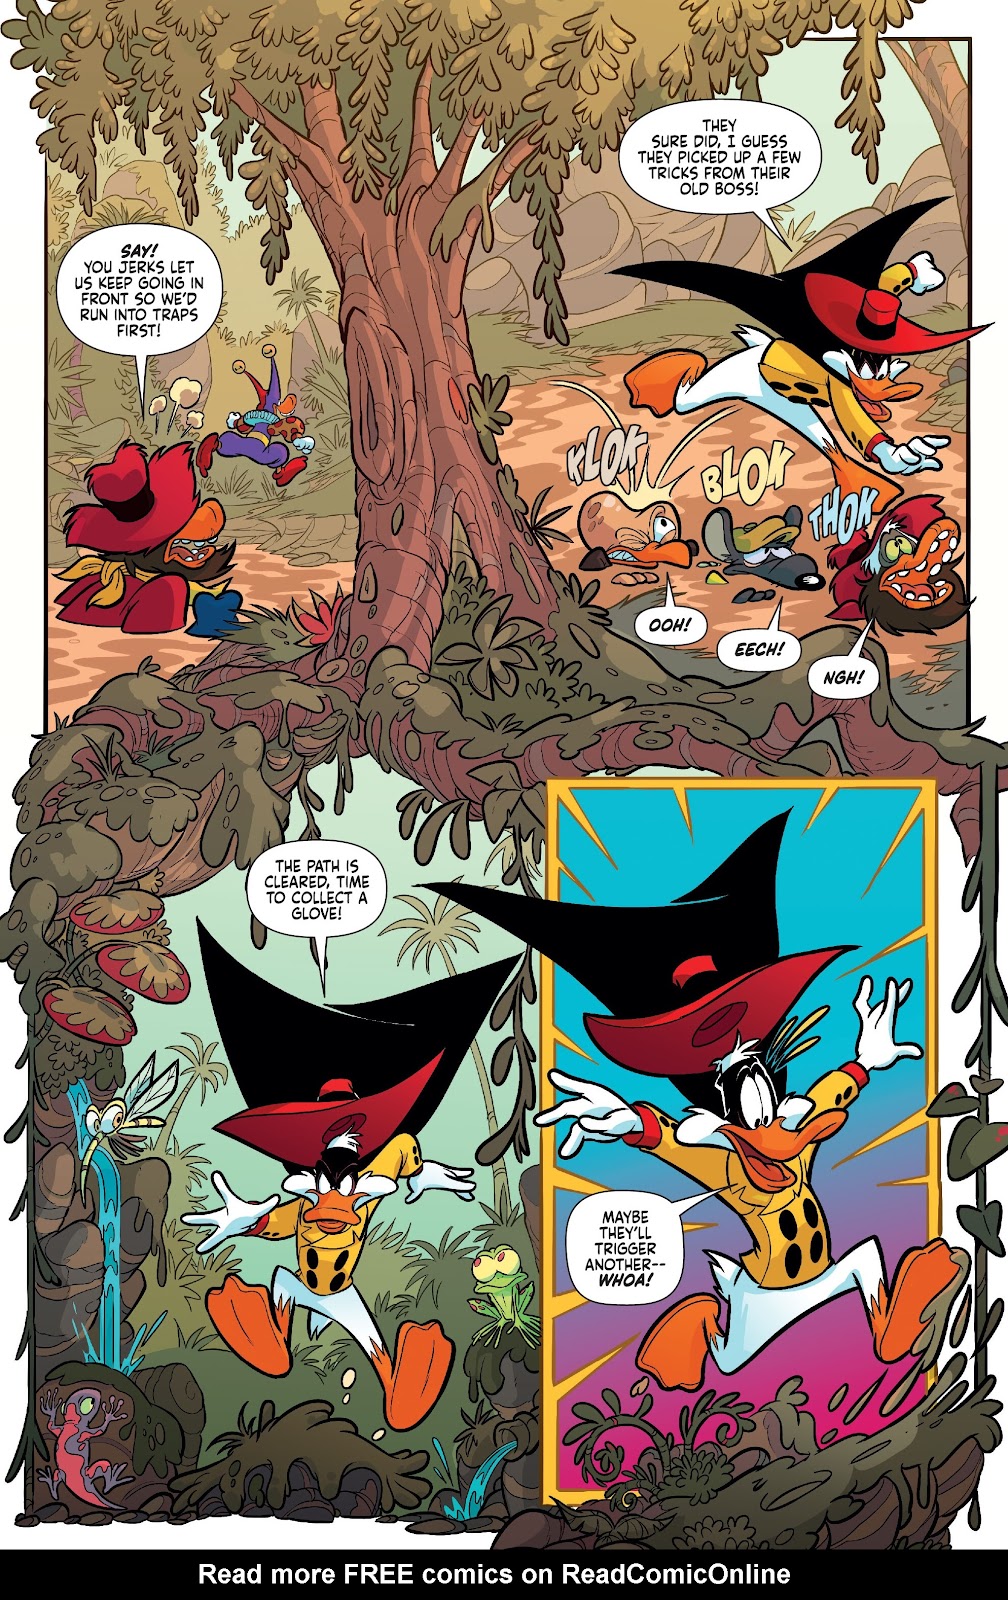 Darkwing Duck: Negaduck issue 3 - Page 17